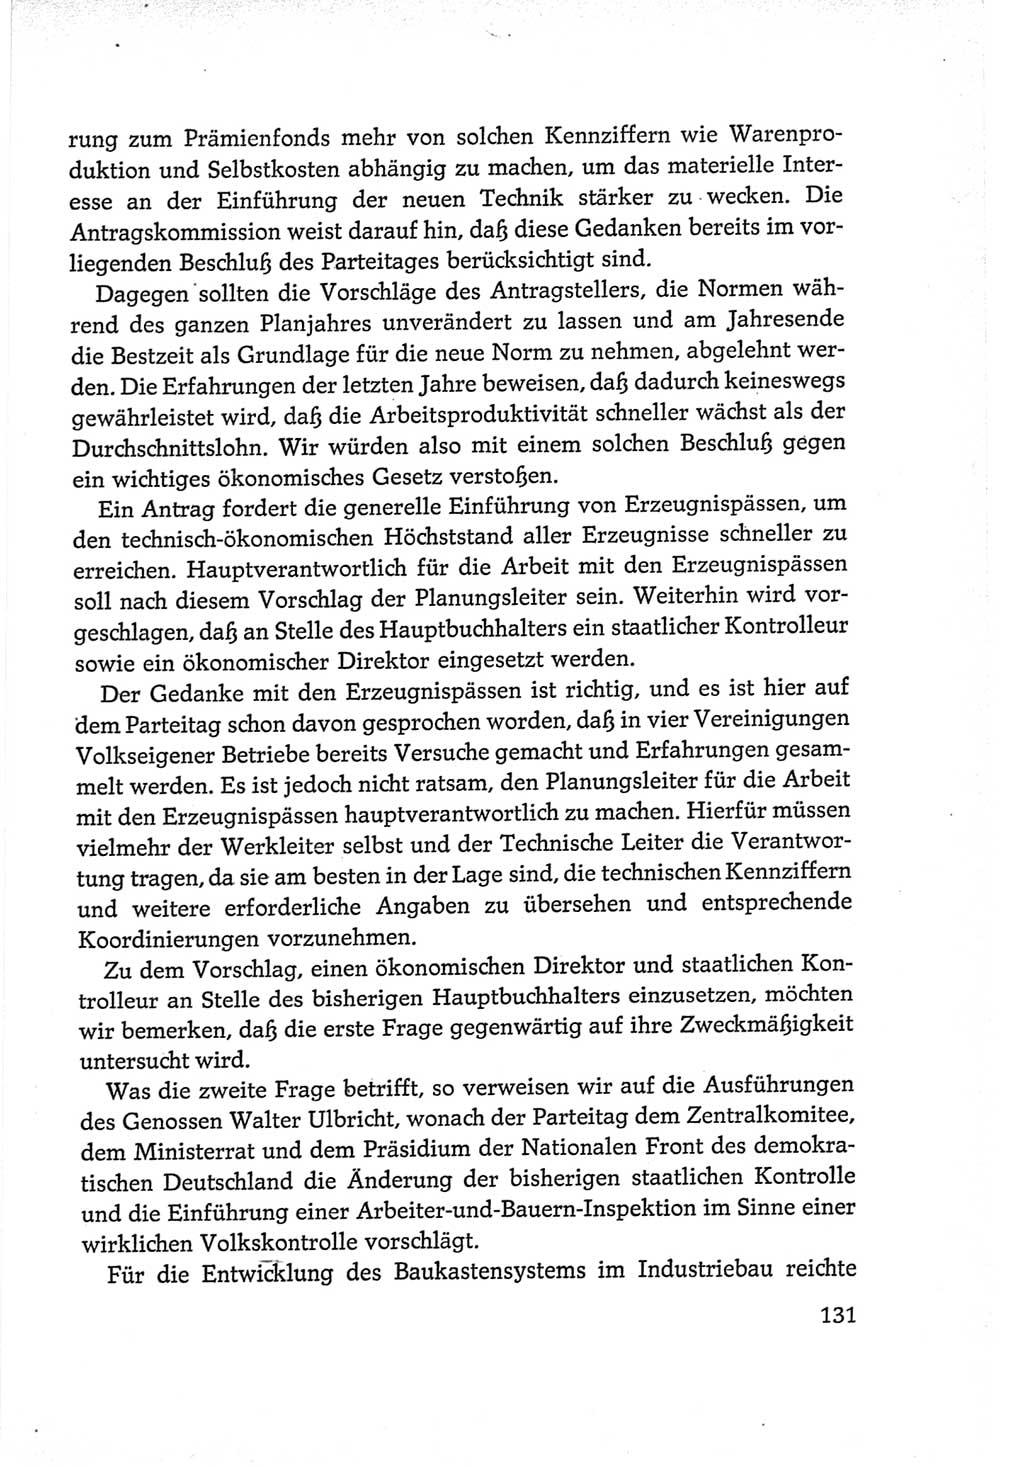 Protokoll der Verhandlungen des Ⅵ. Parteitages der Sozialistischen Einheitspartei Deutschlands (SED) [Deutsche Demokratische Republik (DDR)] 1963, Band Ⅱ, Seite 131 (Prot. Verh. Ⅵ. PT SED DDR 1963, Bd. Ⅱ, S. 131)